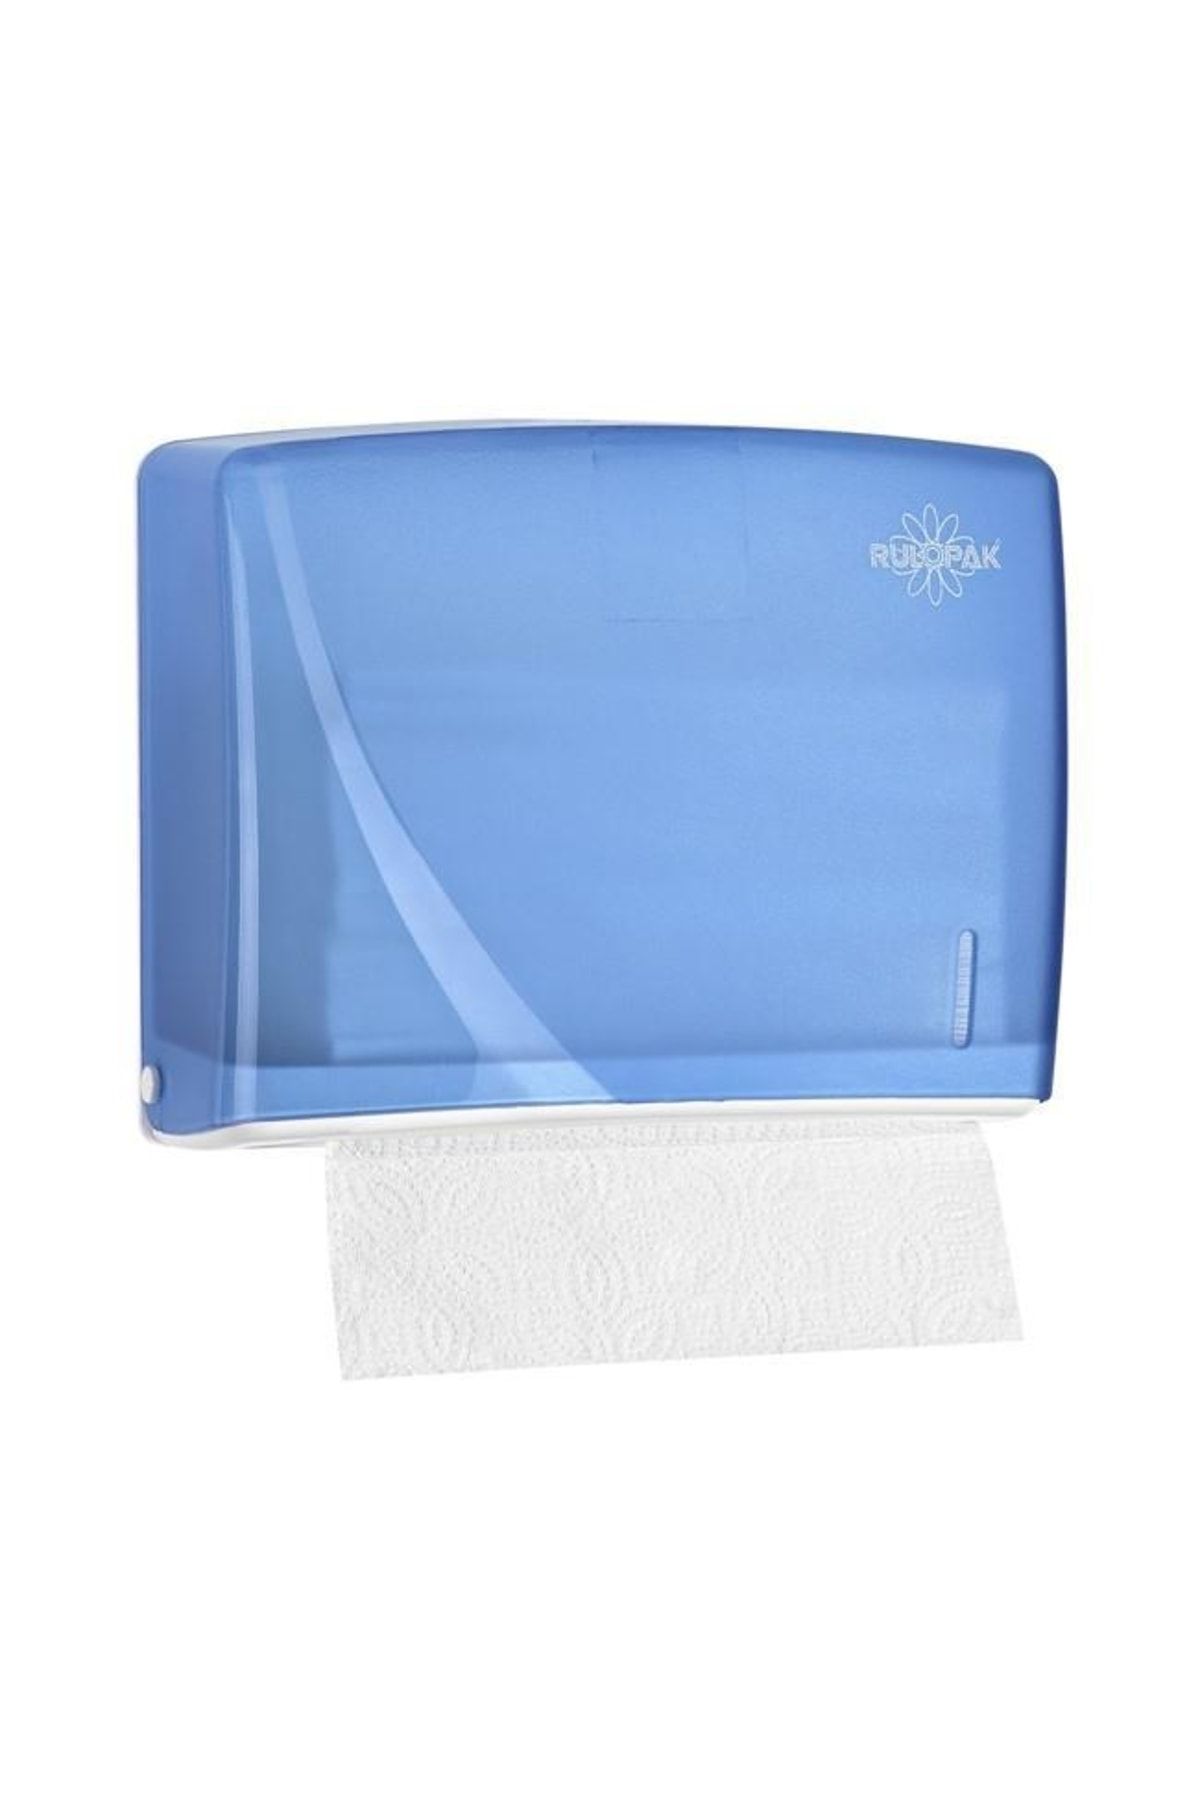 Rulopak Modern Z Katlı Şeffaf Mavi Kağıt Havlu Dispenseri 200 Kağıt Kapasiteli R-1317